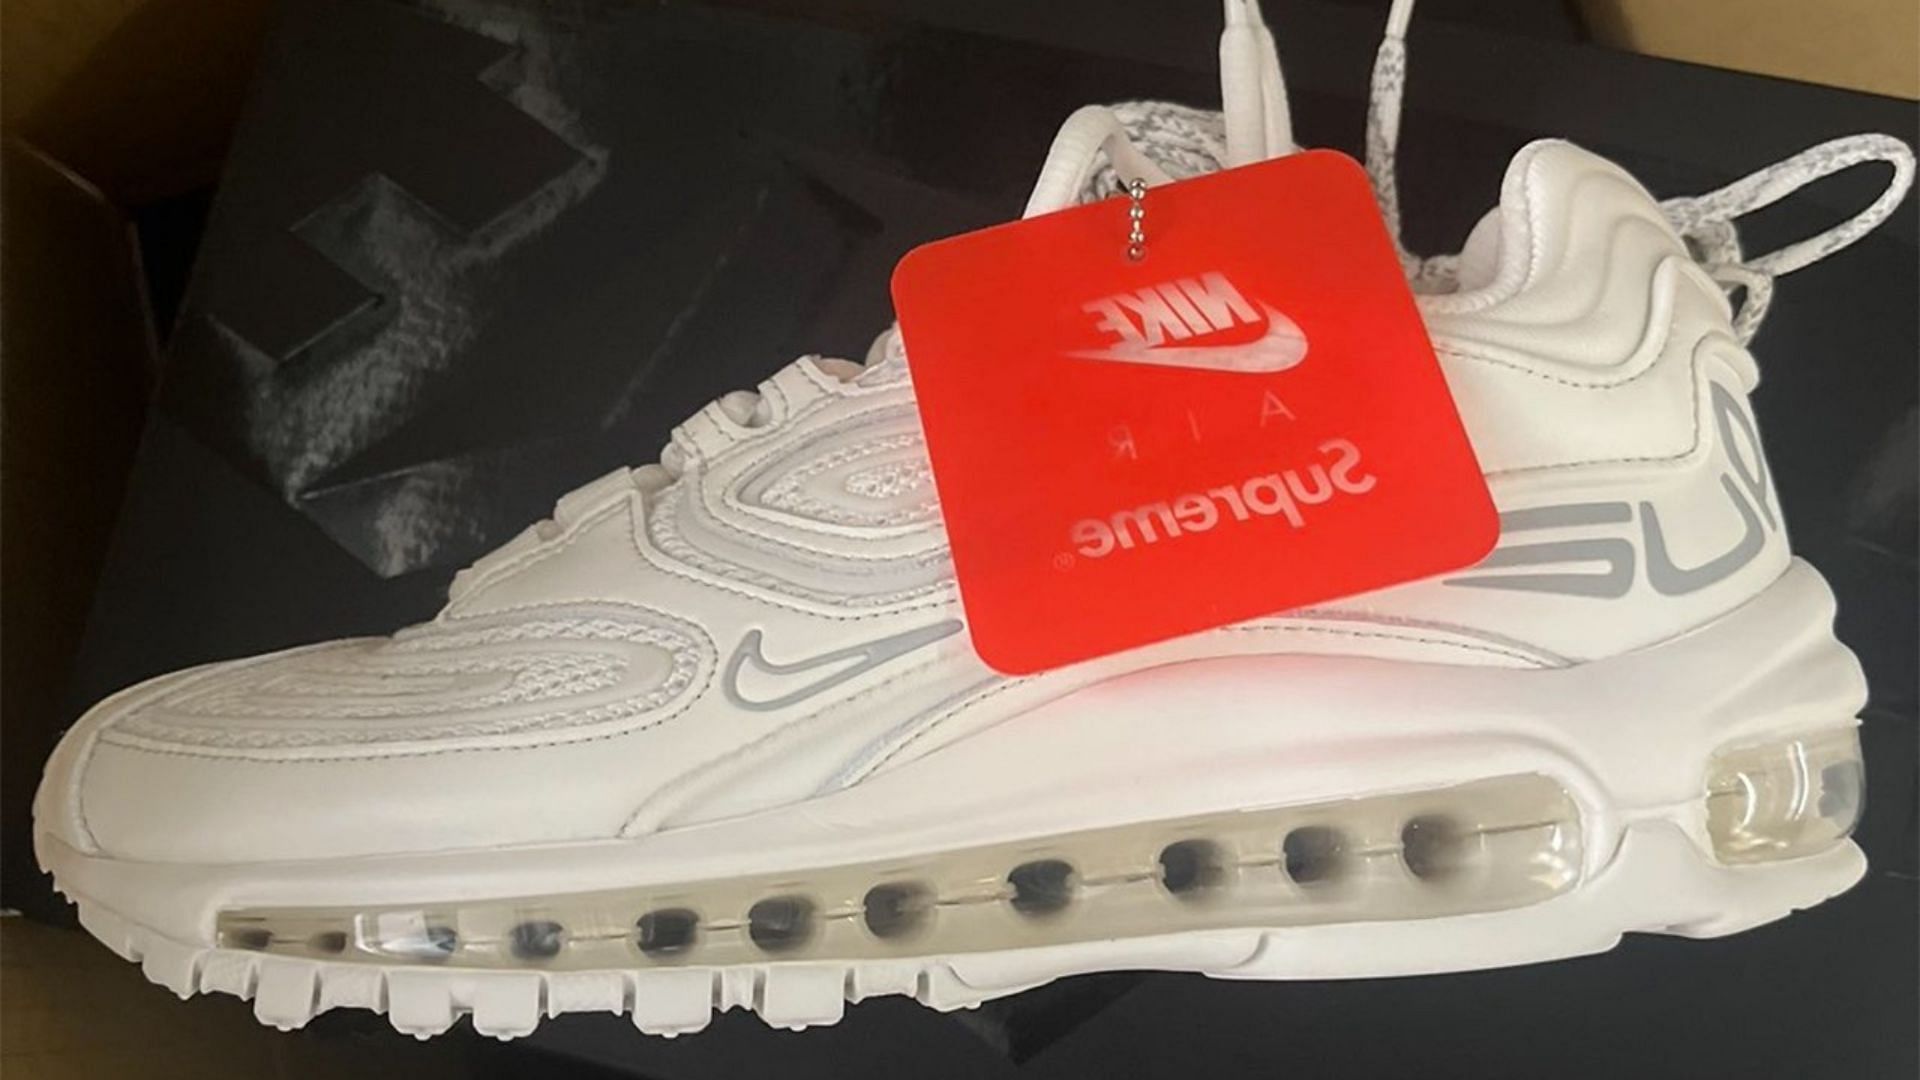 Supreme x Nike Air Max 99 TL Triple White shoes (Image via Instagram/@horhead_sales)